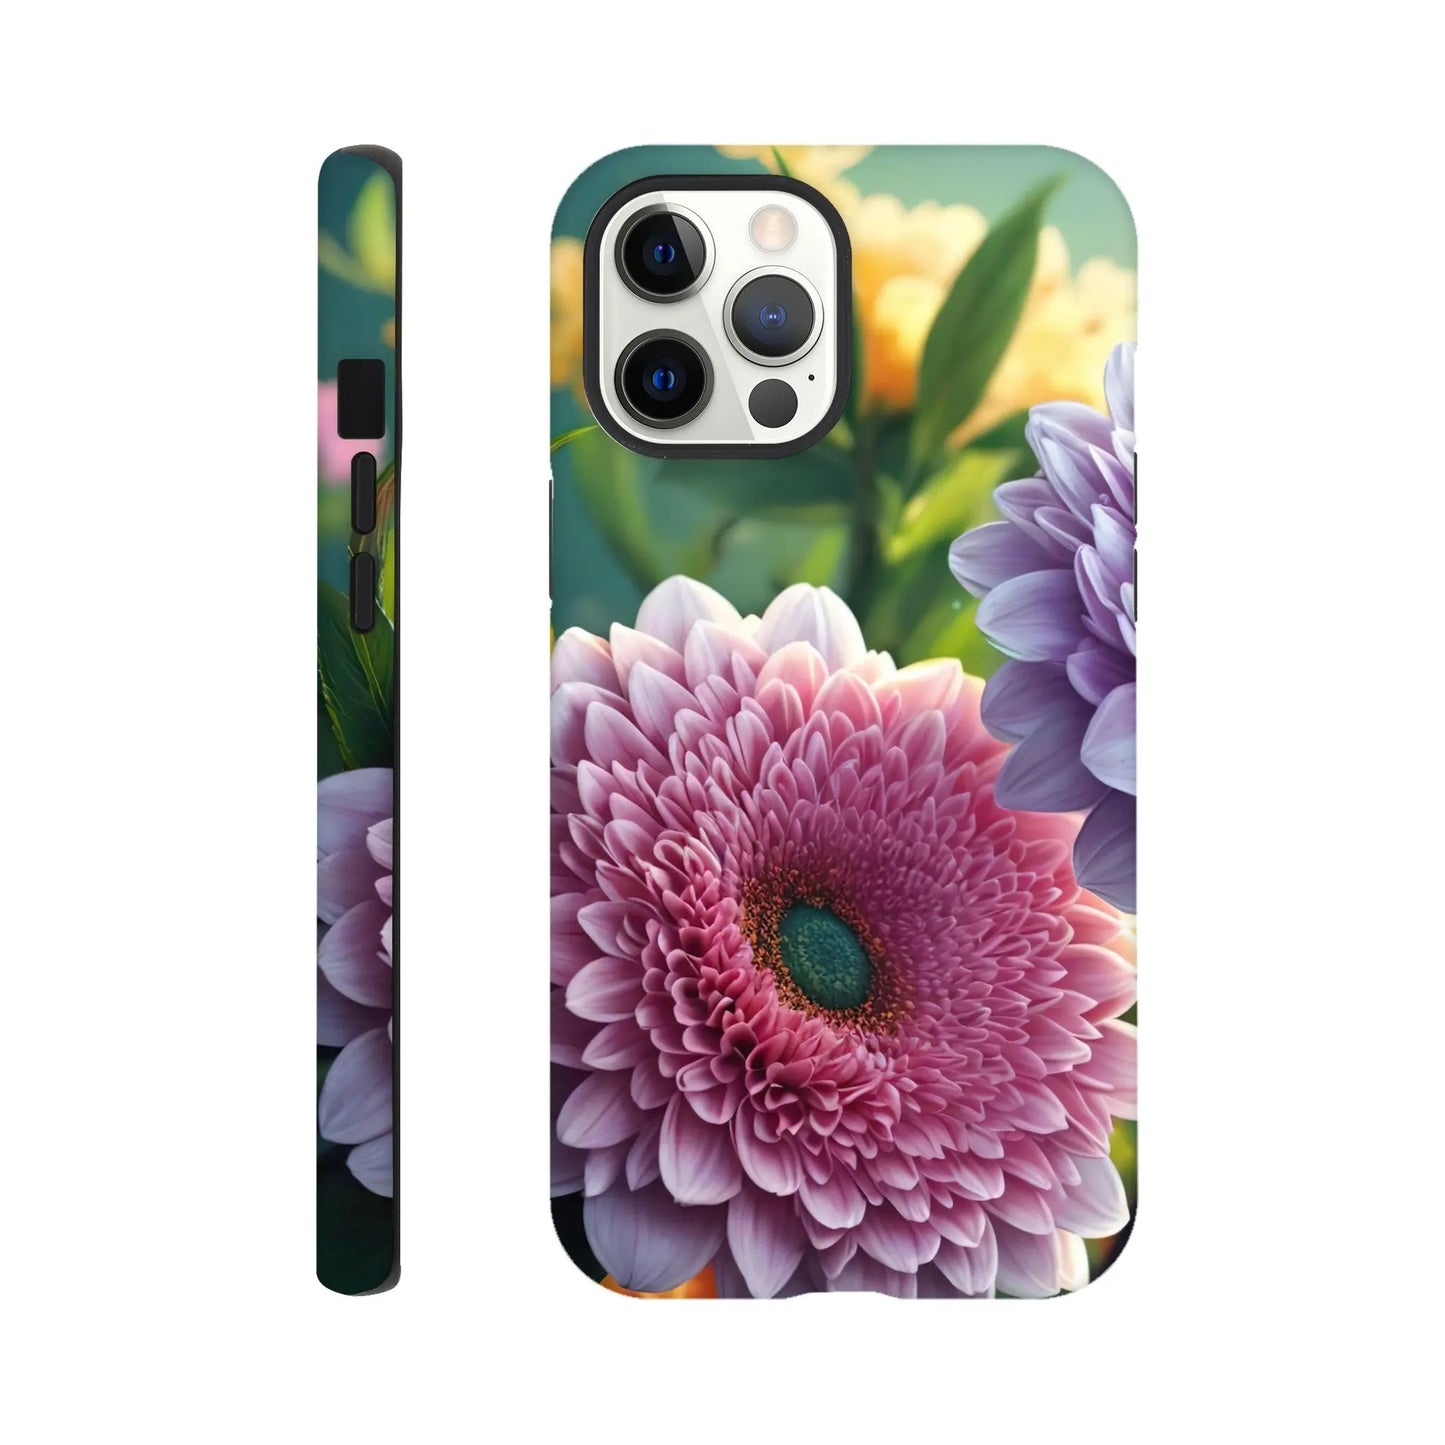 Smartphone-Hülle "Hart" - Blumen Vielfalt - Foto Stil, KI-Kunst, Pflanzen, iPhone-12-Pro-Max - RolConArt